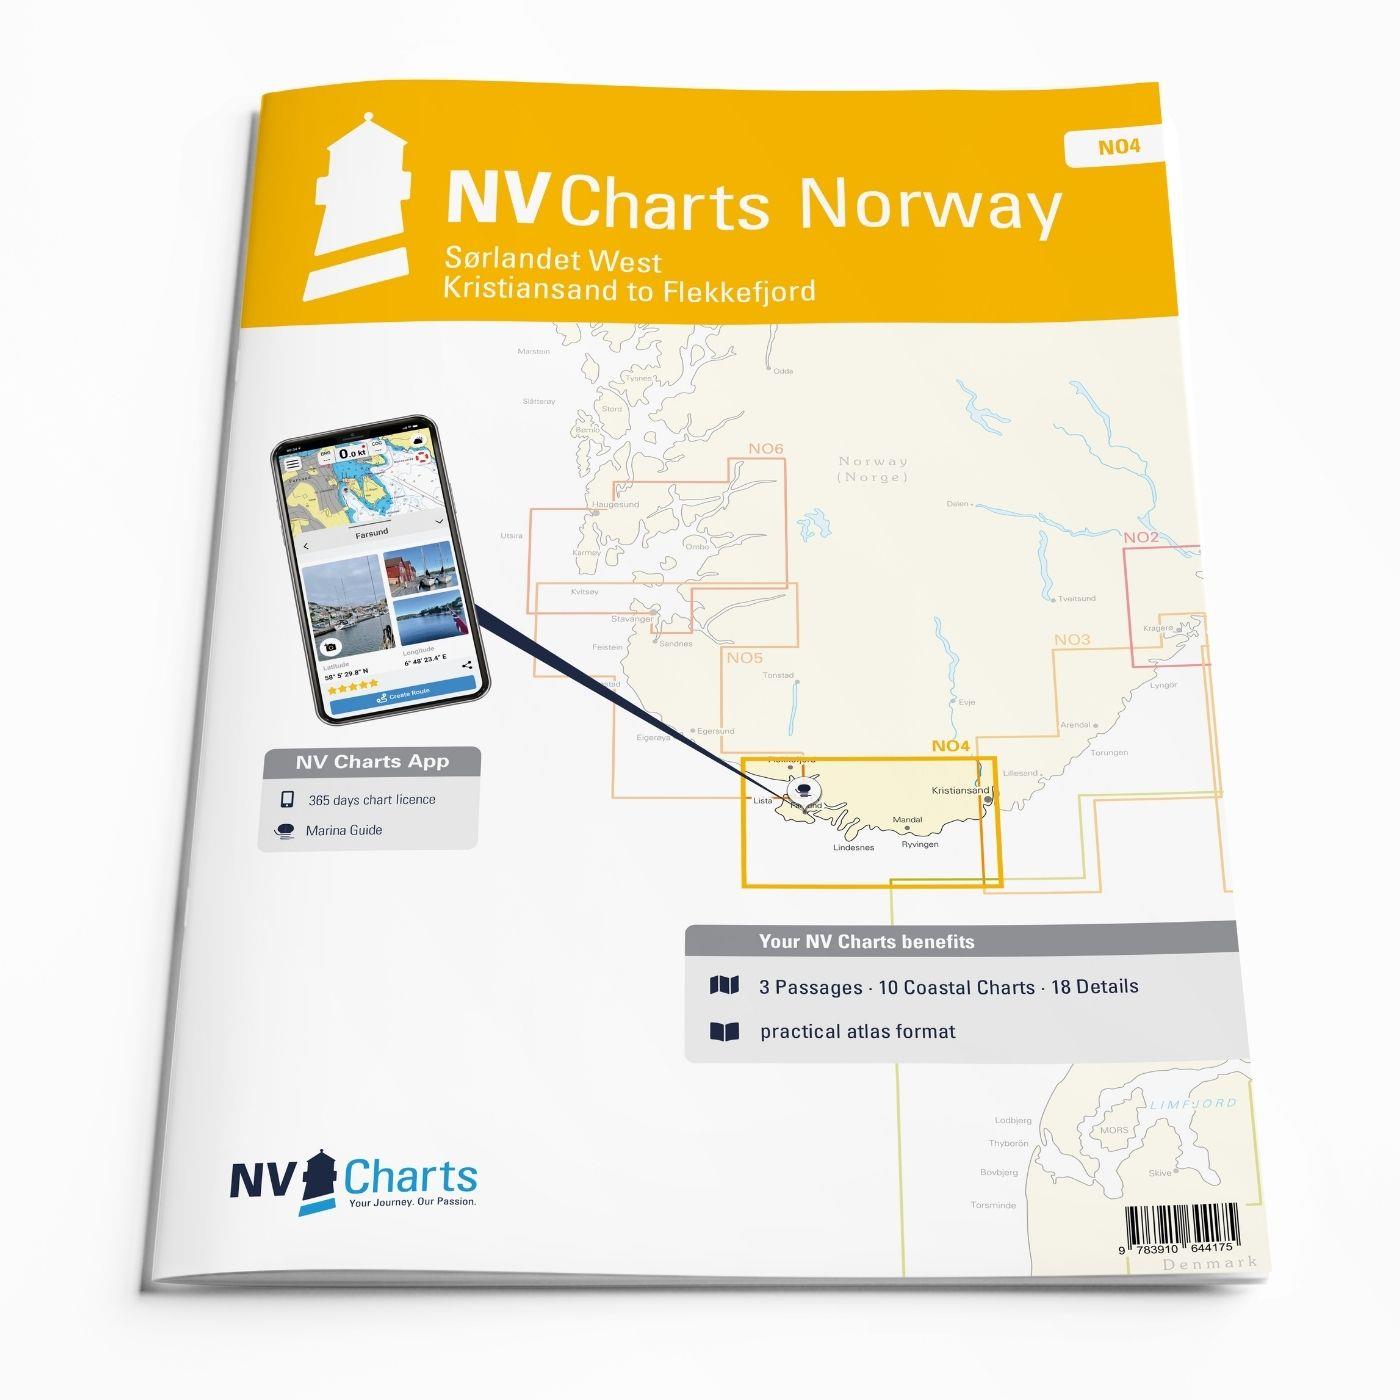 NV Charts Norway NO4 - Sørlandet West - Kristiansand to Flekkefjord